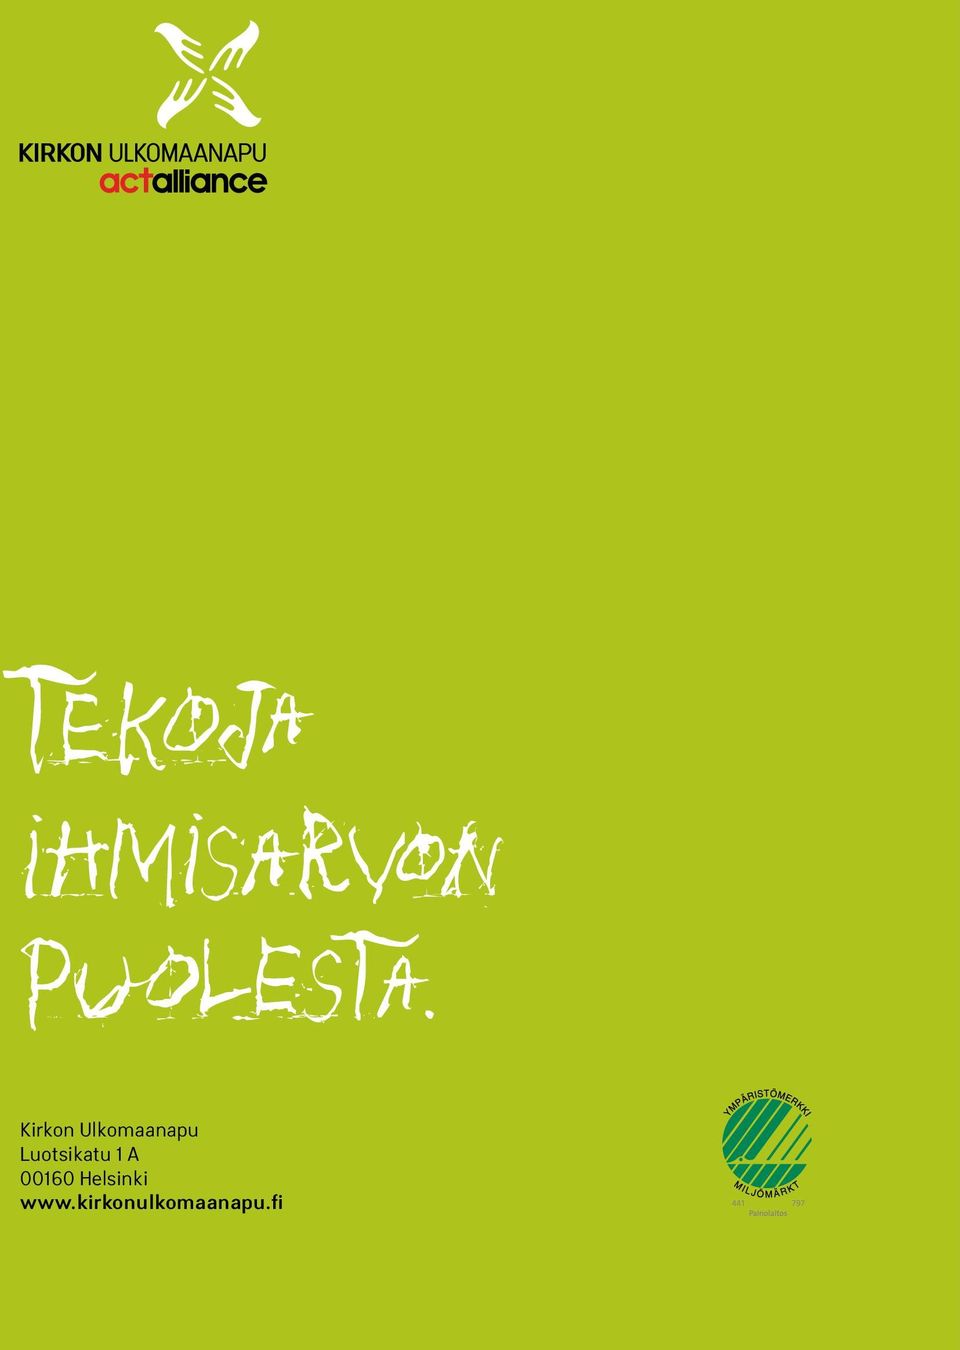 00160 Helsinki www.